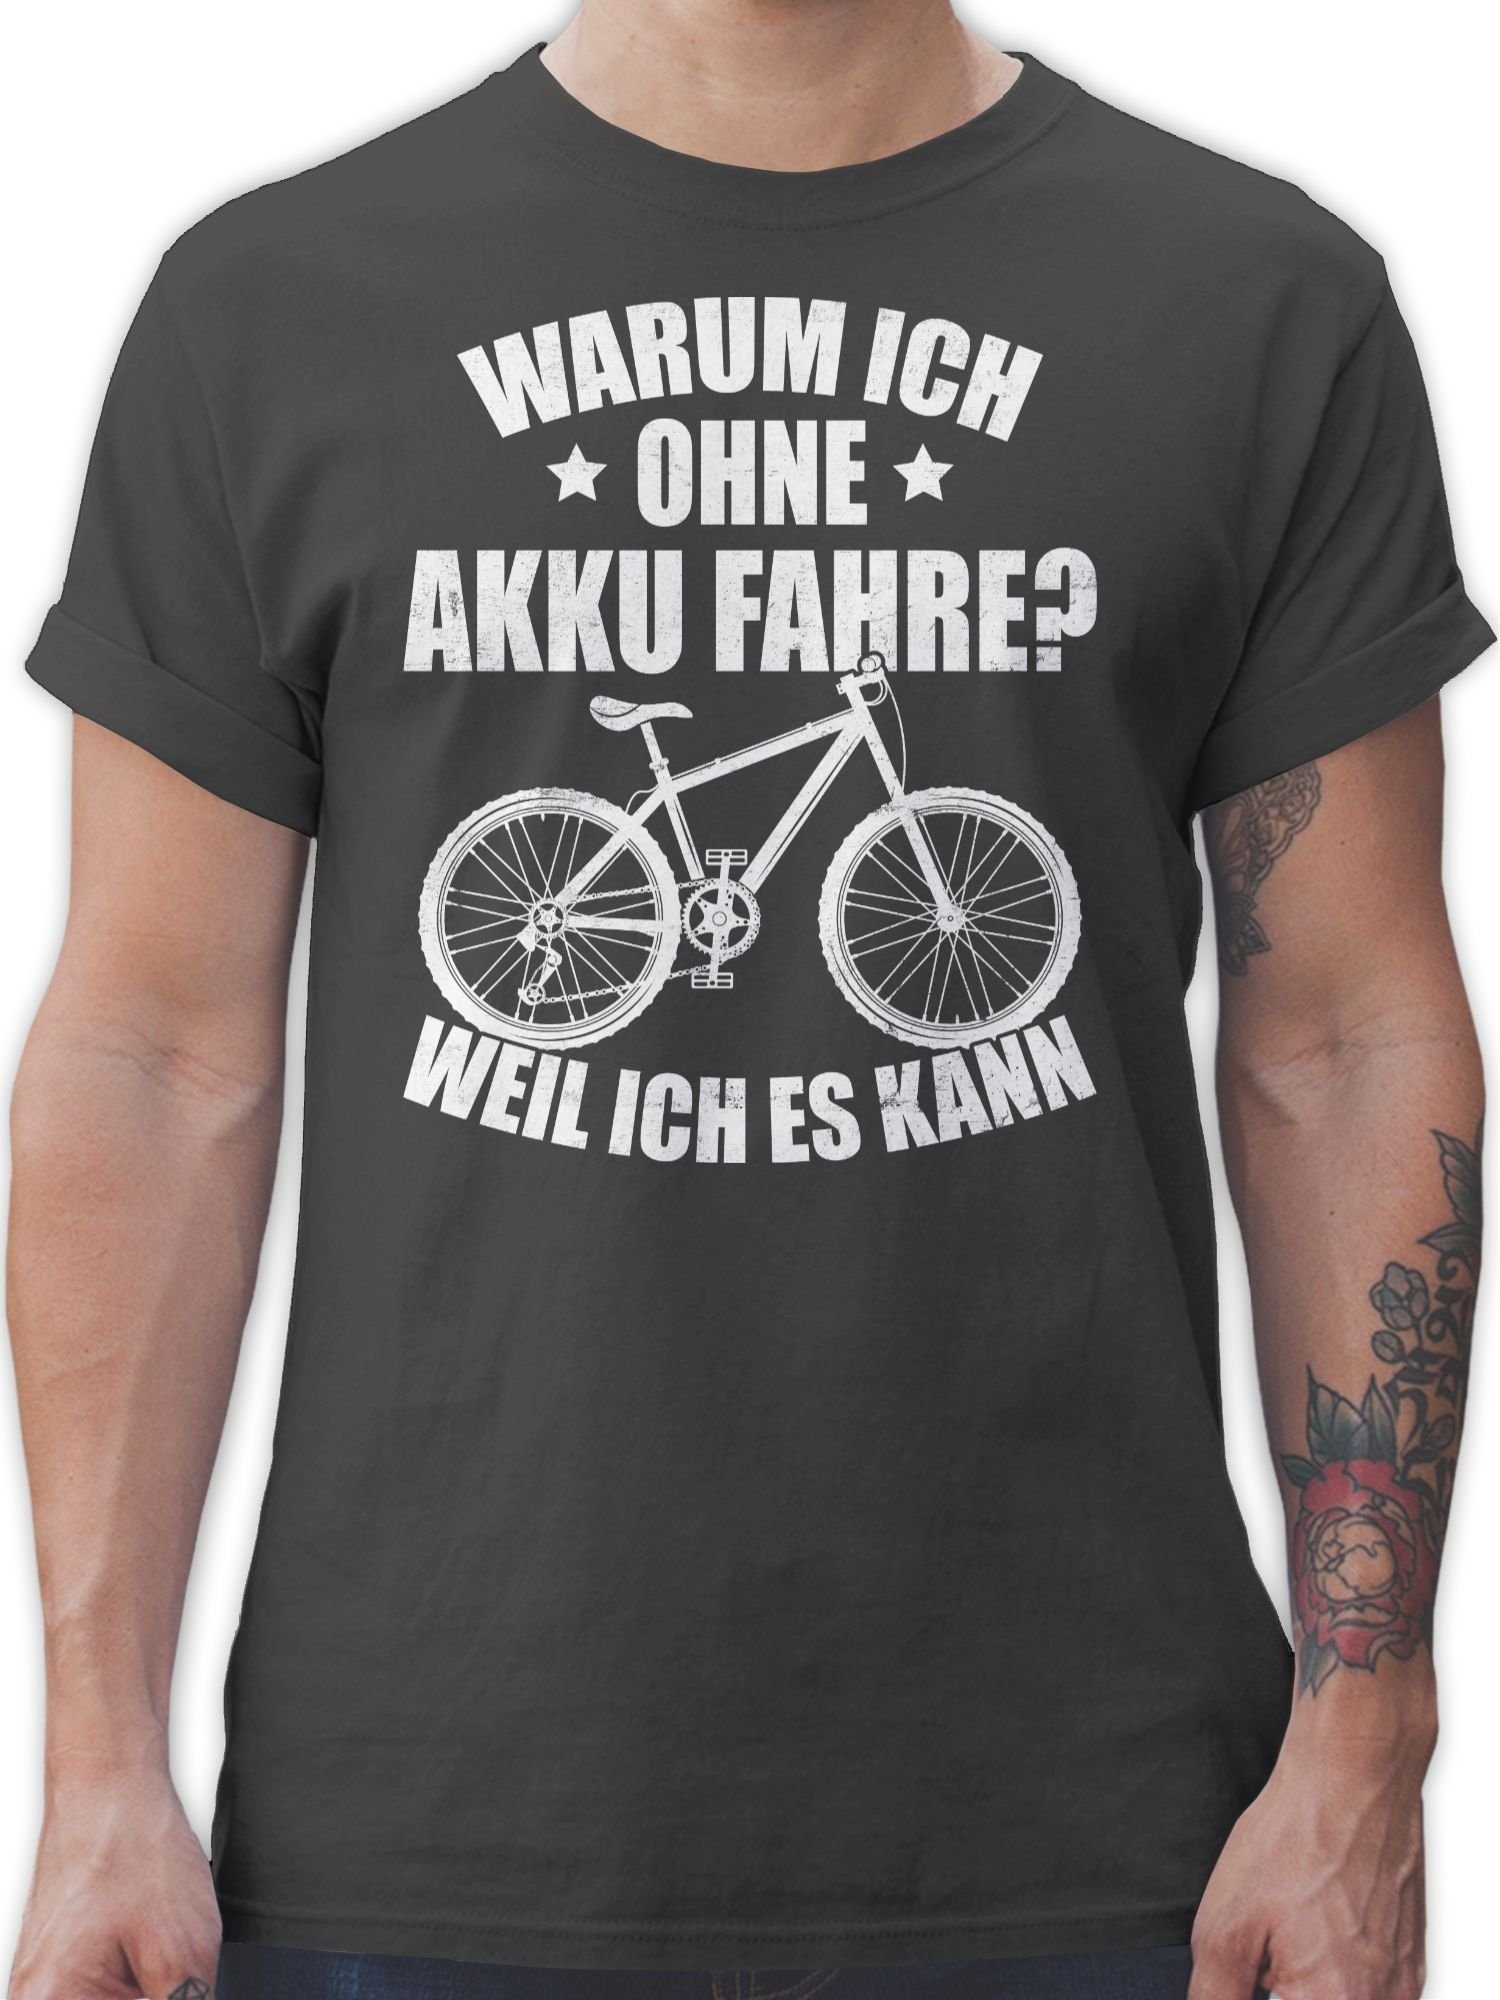 Shirtracer T-Shirt Warum ich ohne Akku fahre - weil ich es kann - weiß Fahrrad Bekleidung Radsport 03 Dunkelgrau